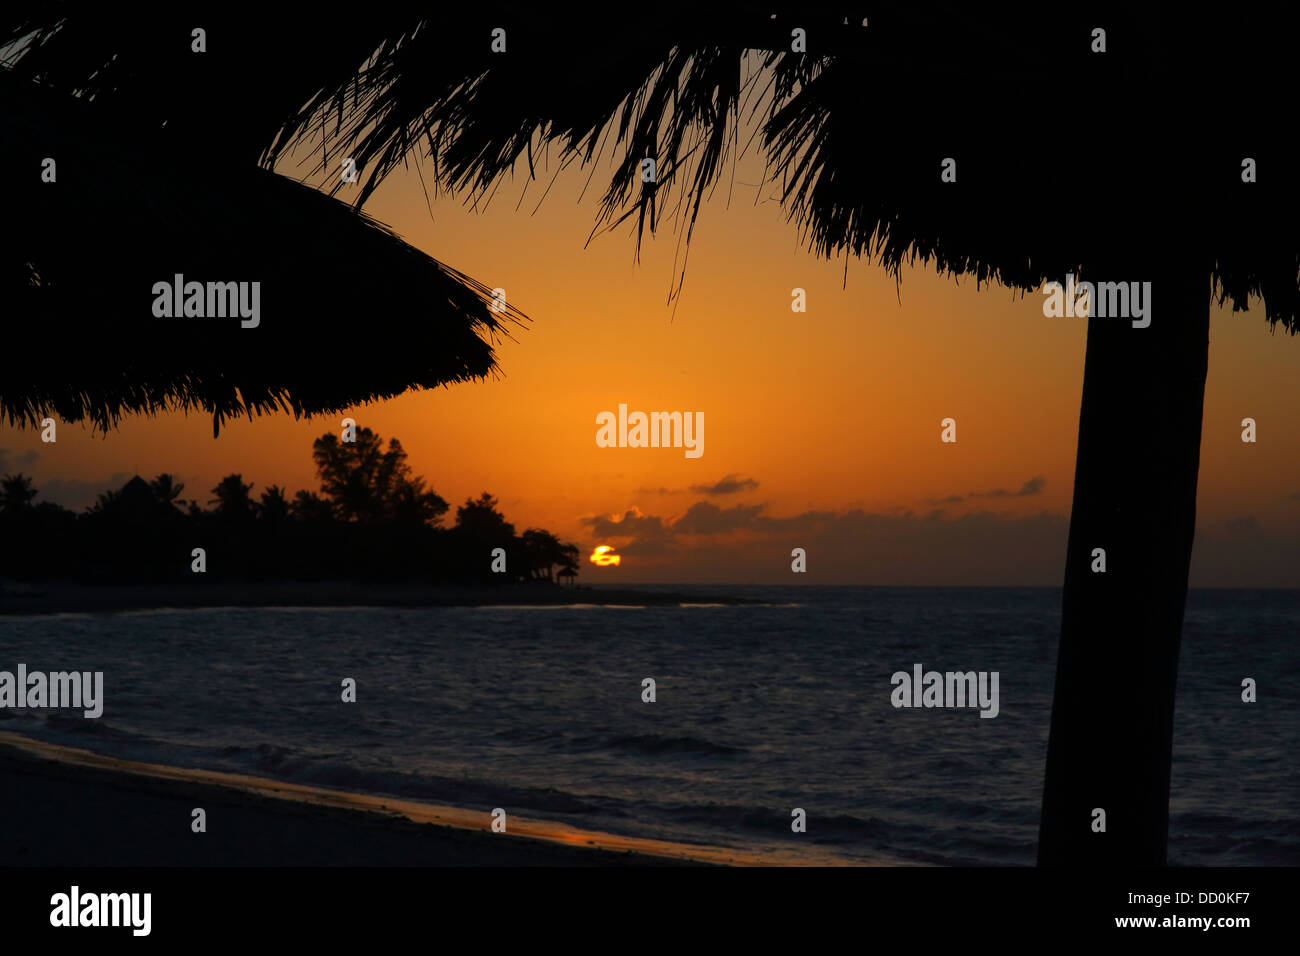 Tramonto, spiaggia caraibica scena con ombrelloni in sillohette. Foto Stock